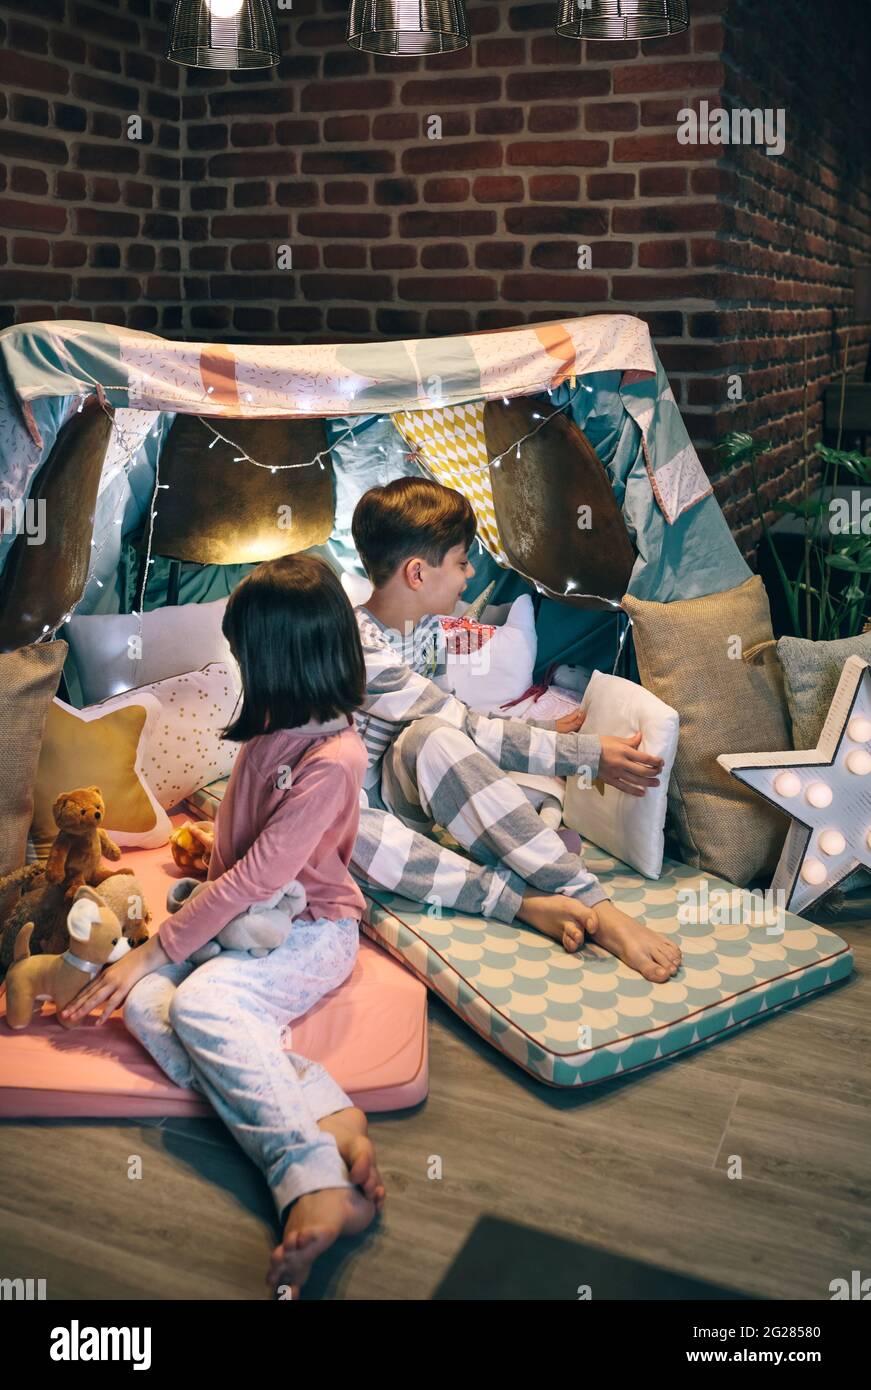 Kinder bereiten Zelt mit Stühlen und Bettwäsche für eine Pyjama-Party vor Stockfoto